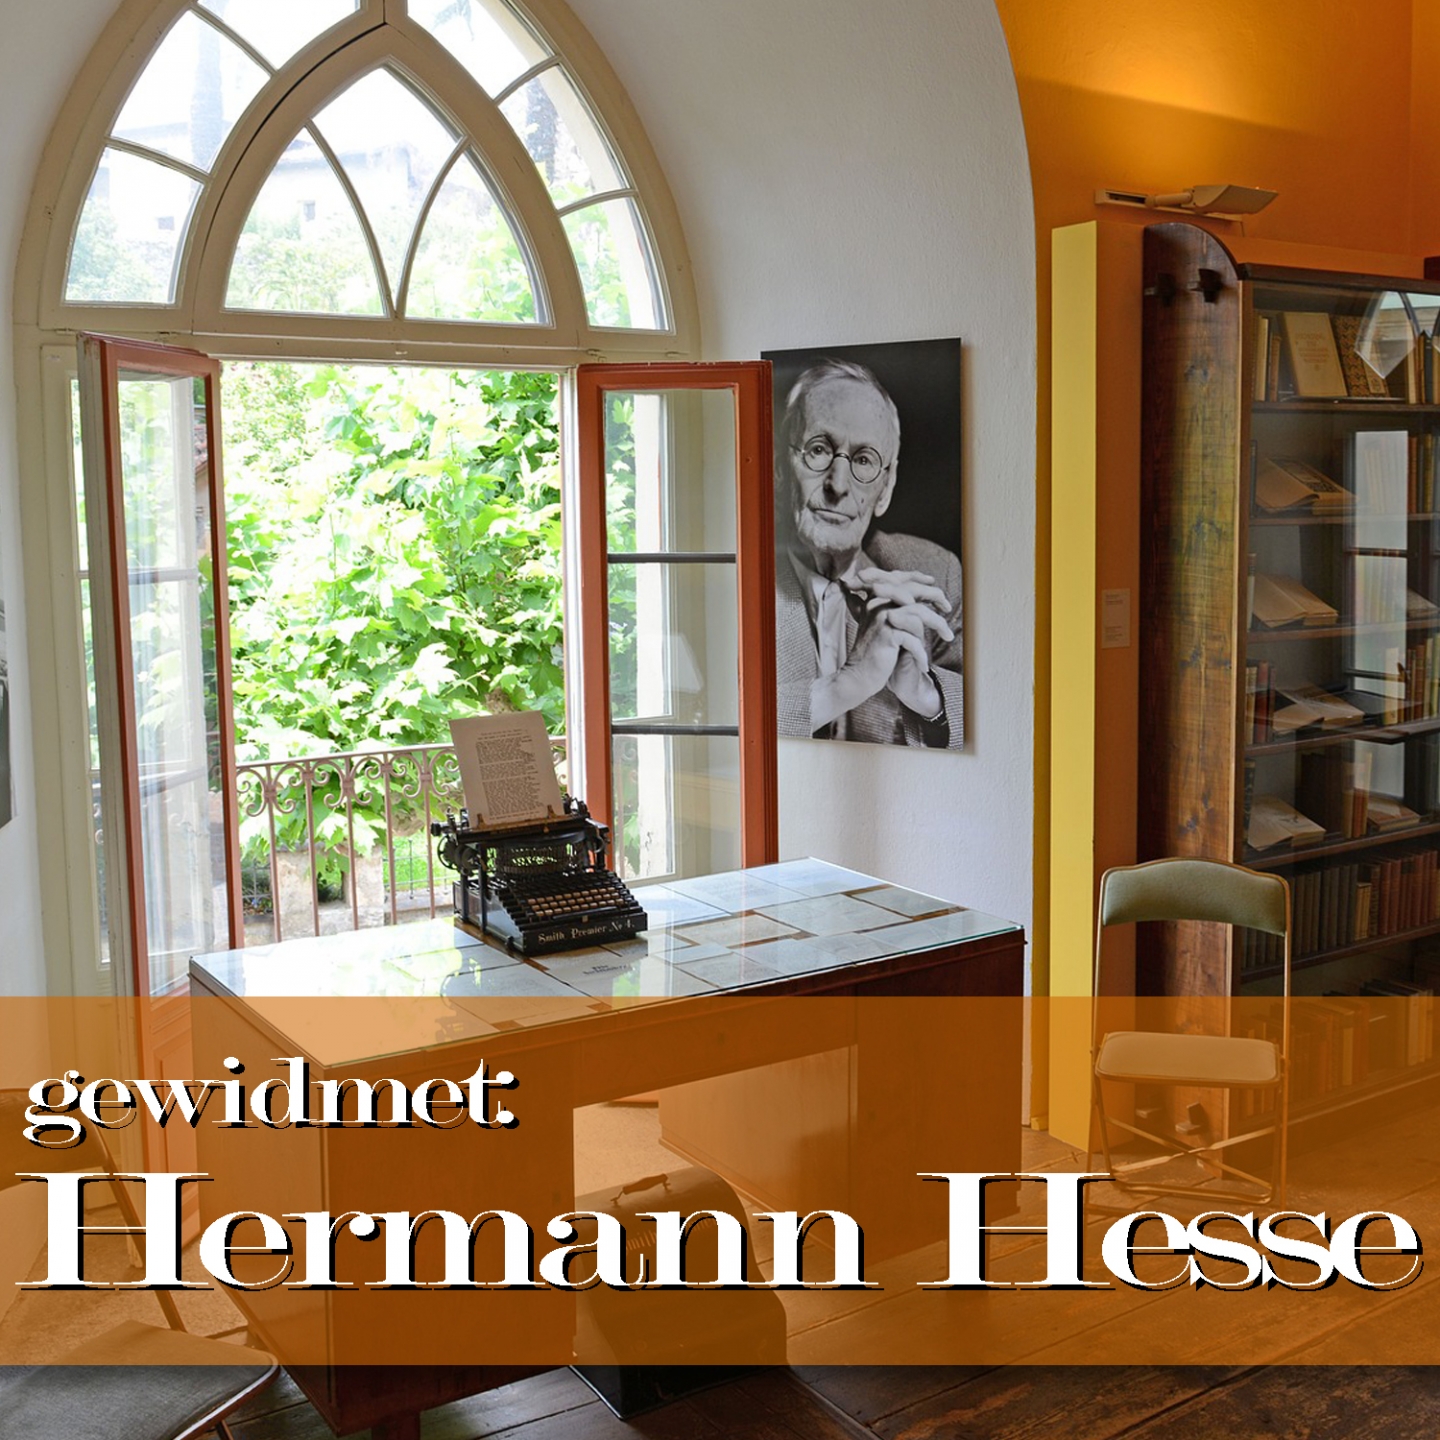 gewidmet: Hermann Hesse